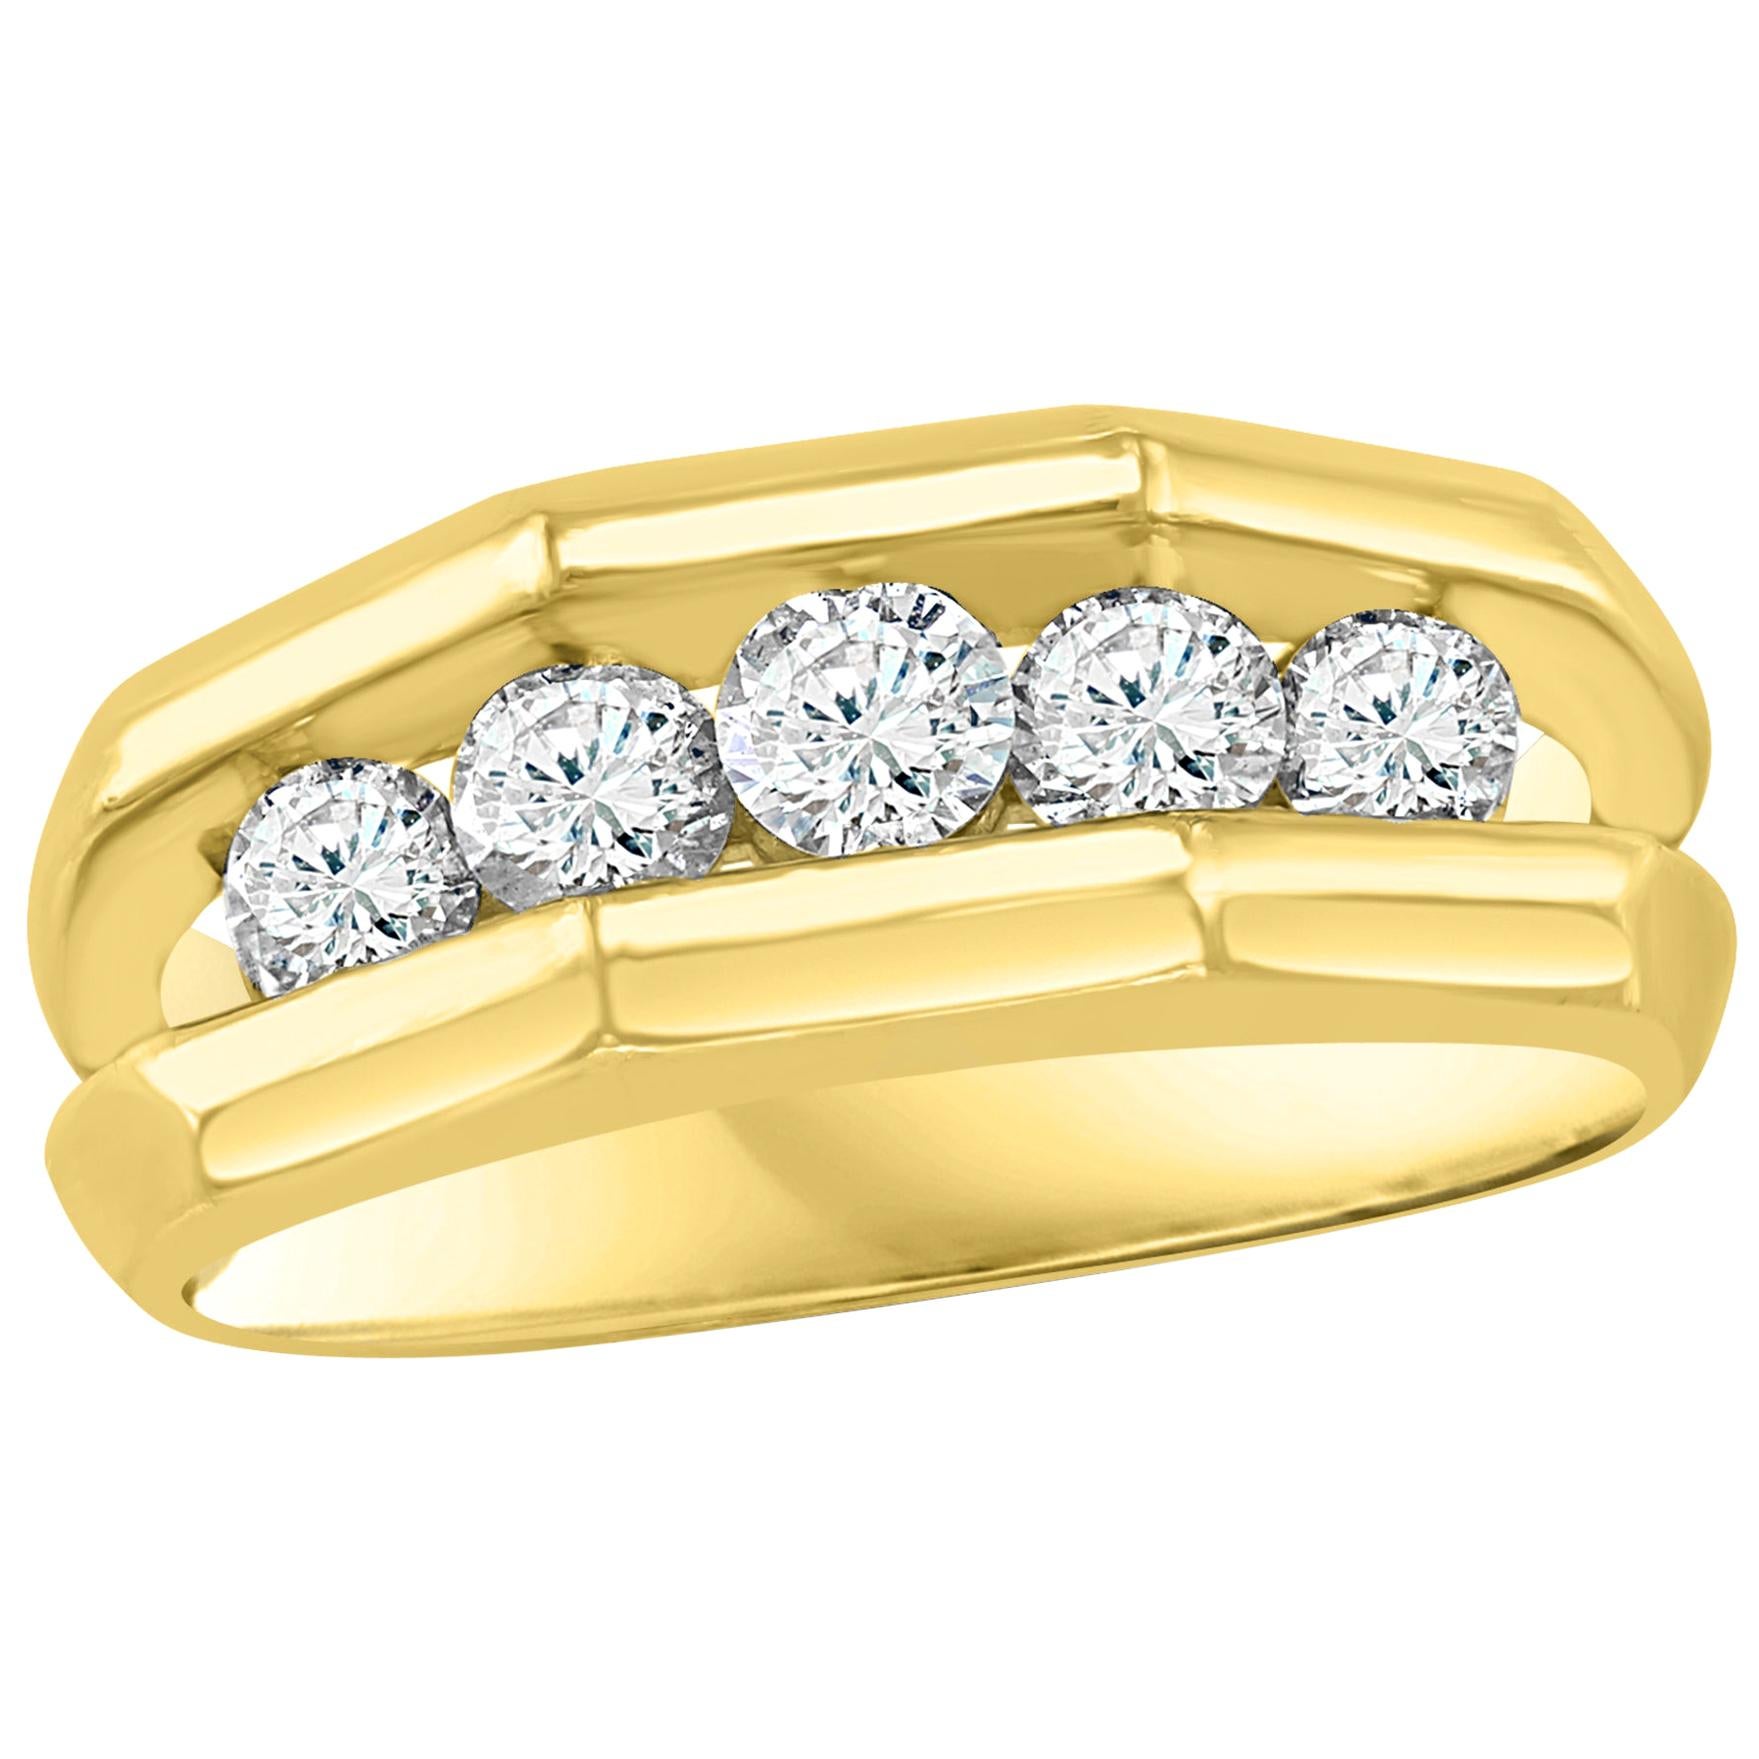 Bague unisexe à 1 rangée de diamants en or jaune 14 carats et 5 diamants de 1 carat